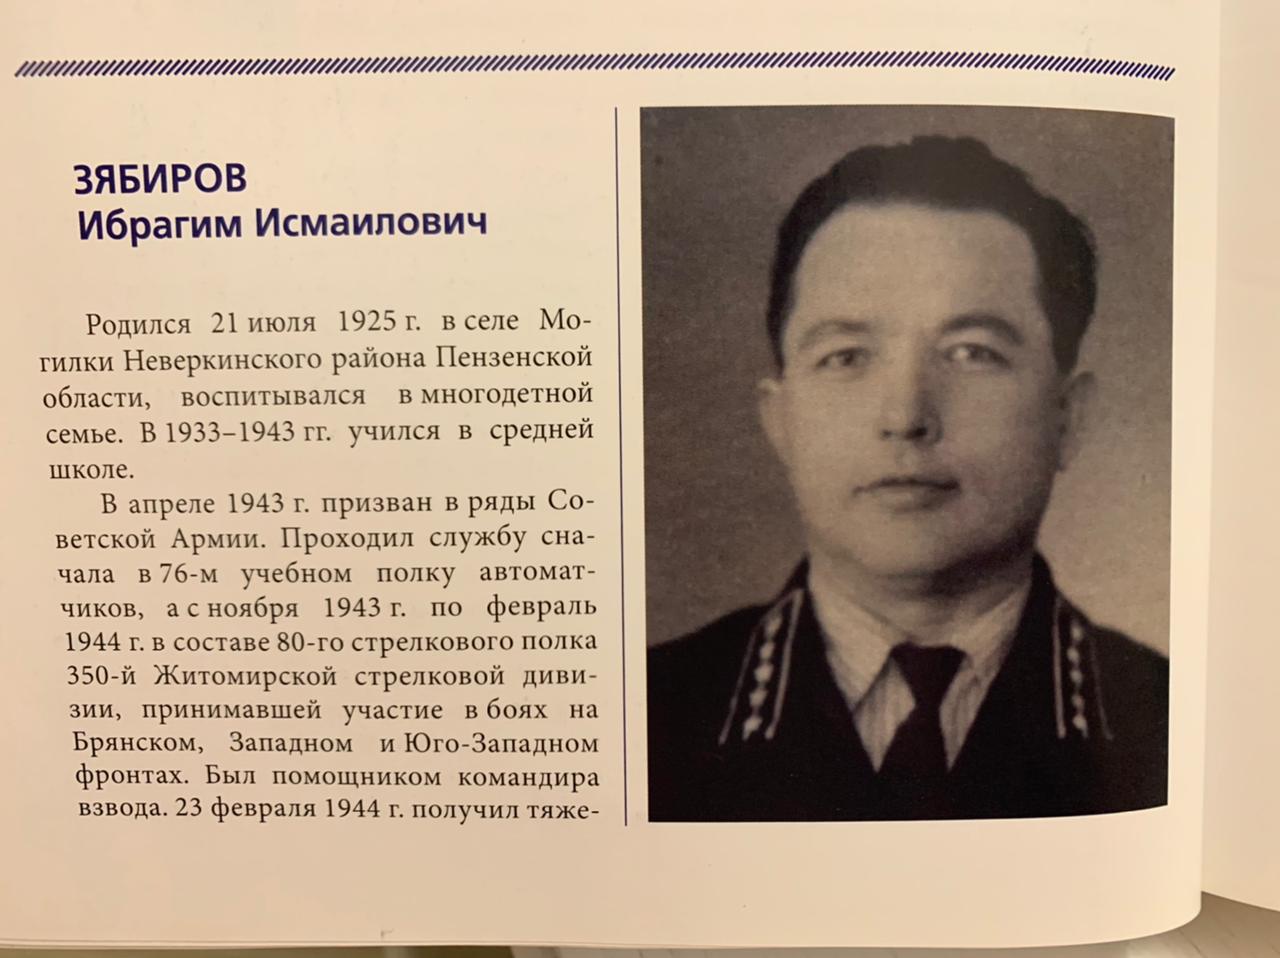 Участник Великой Отечественной войны Зябиров